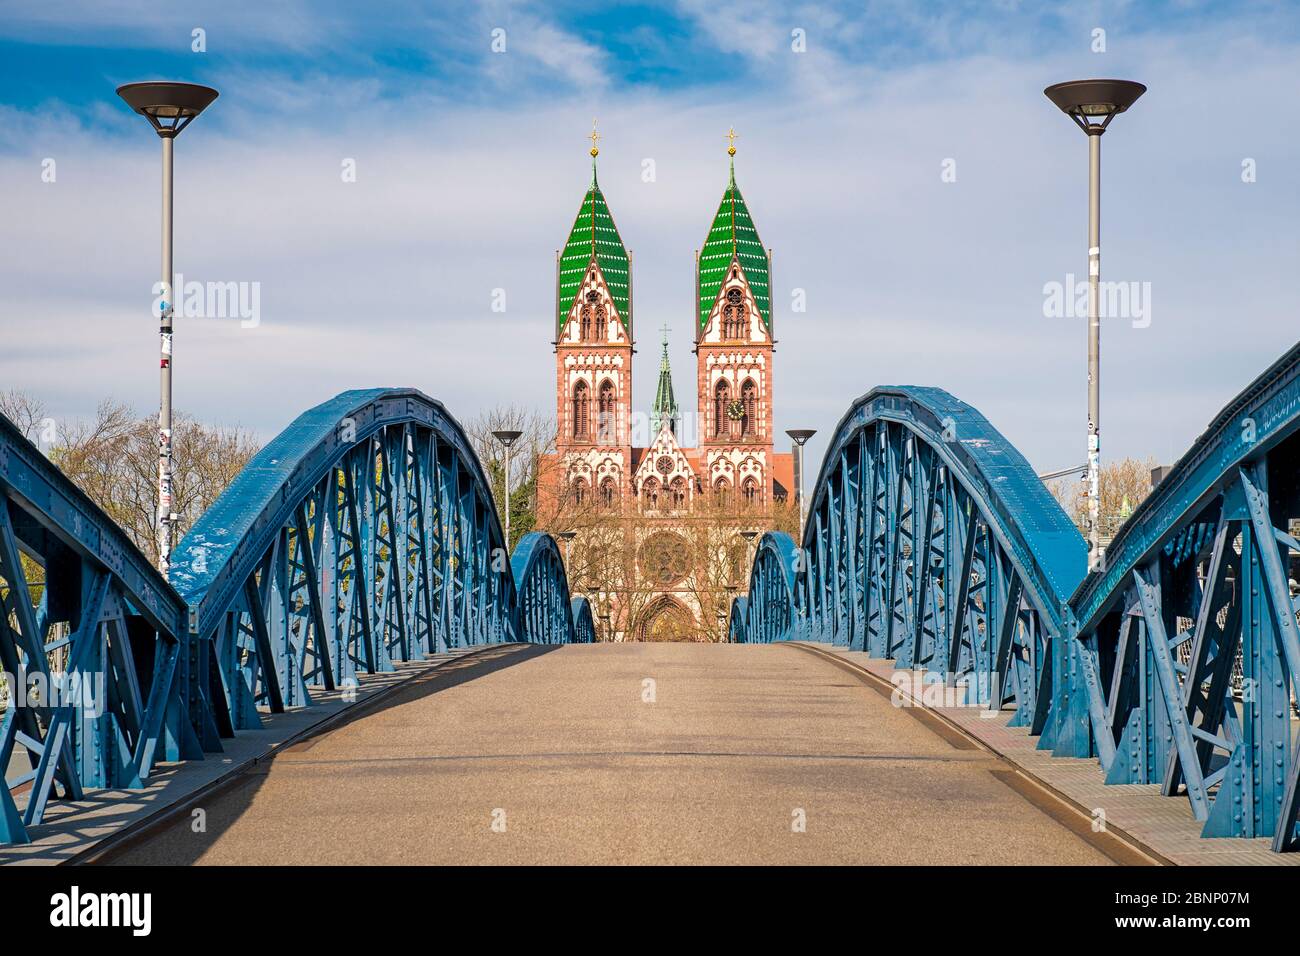 Herz Jesu church and Wiwilí bridge in Freiburg, Germany Stock Photo